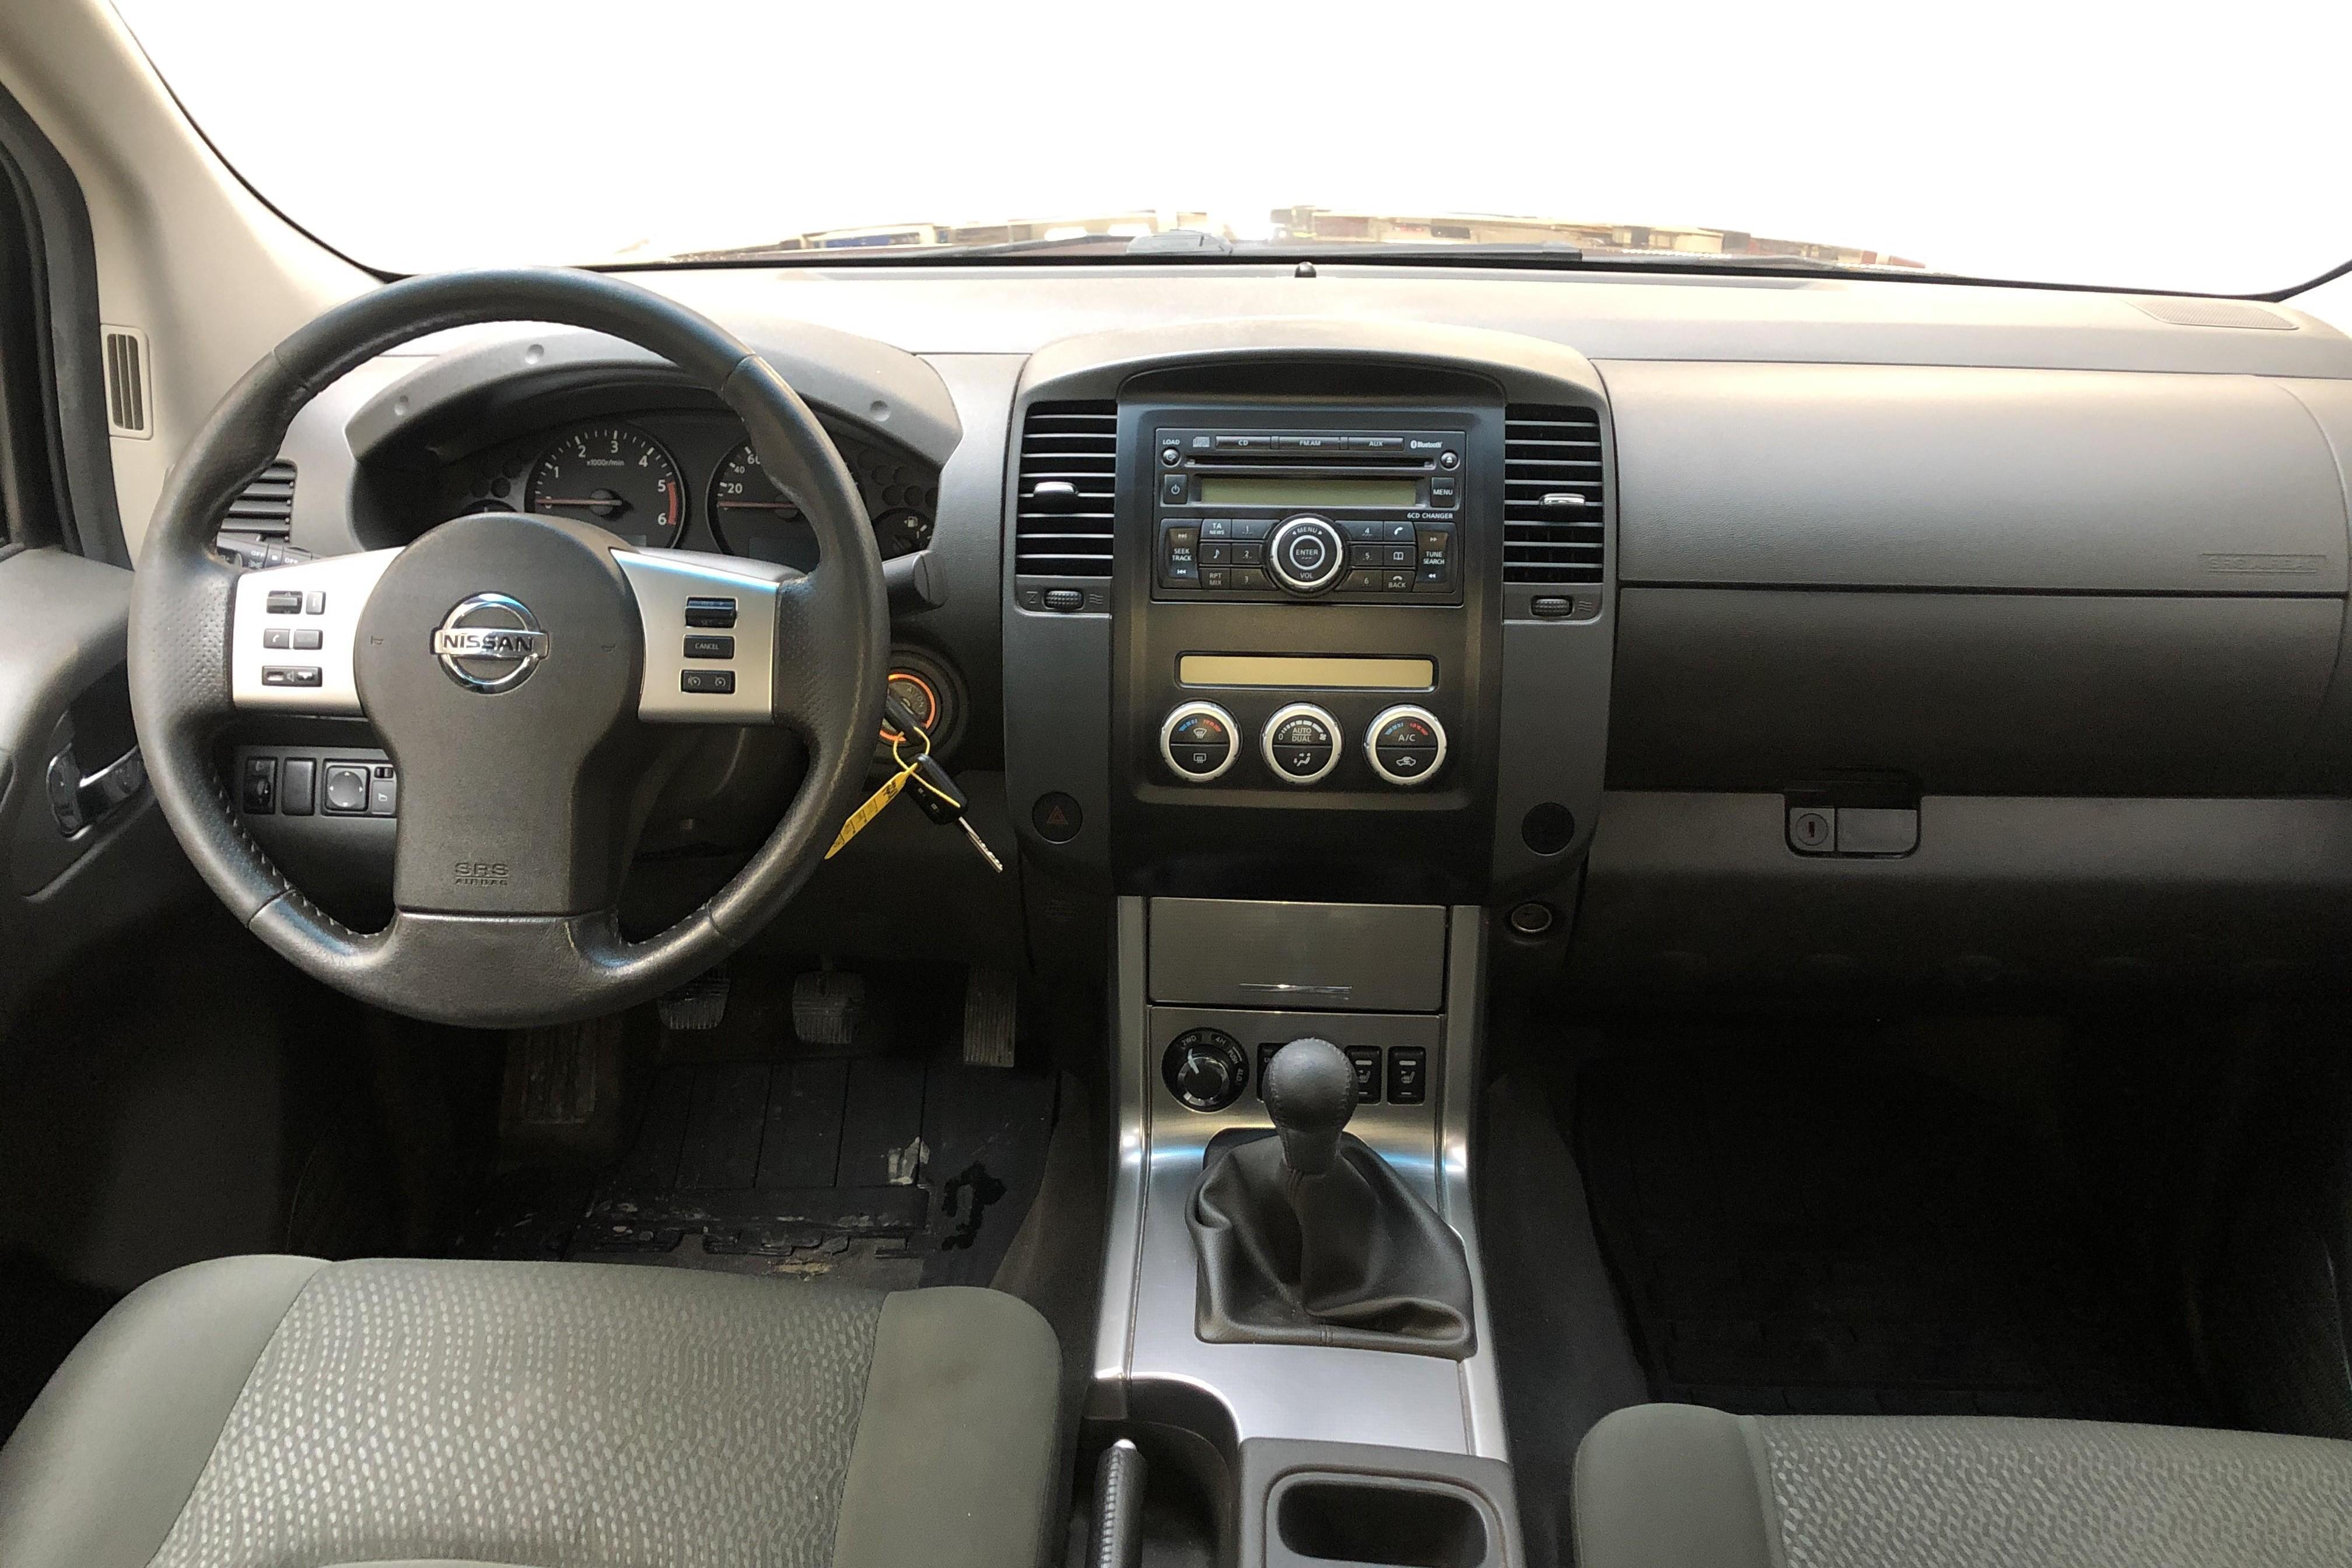 Nissan Navara 2.5 dCi (190hk) - 171 280 km - Manual - Dark Brown - 2011